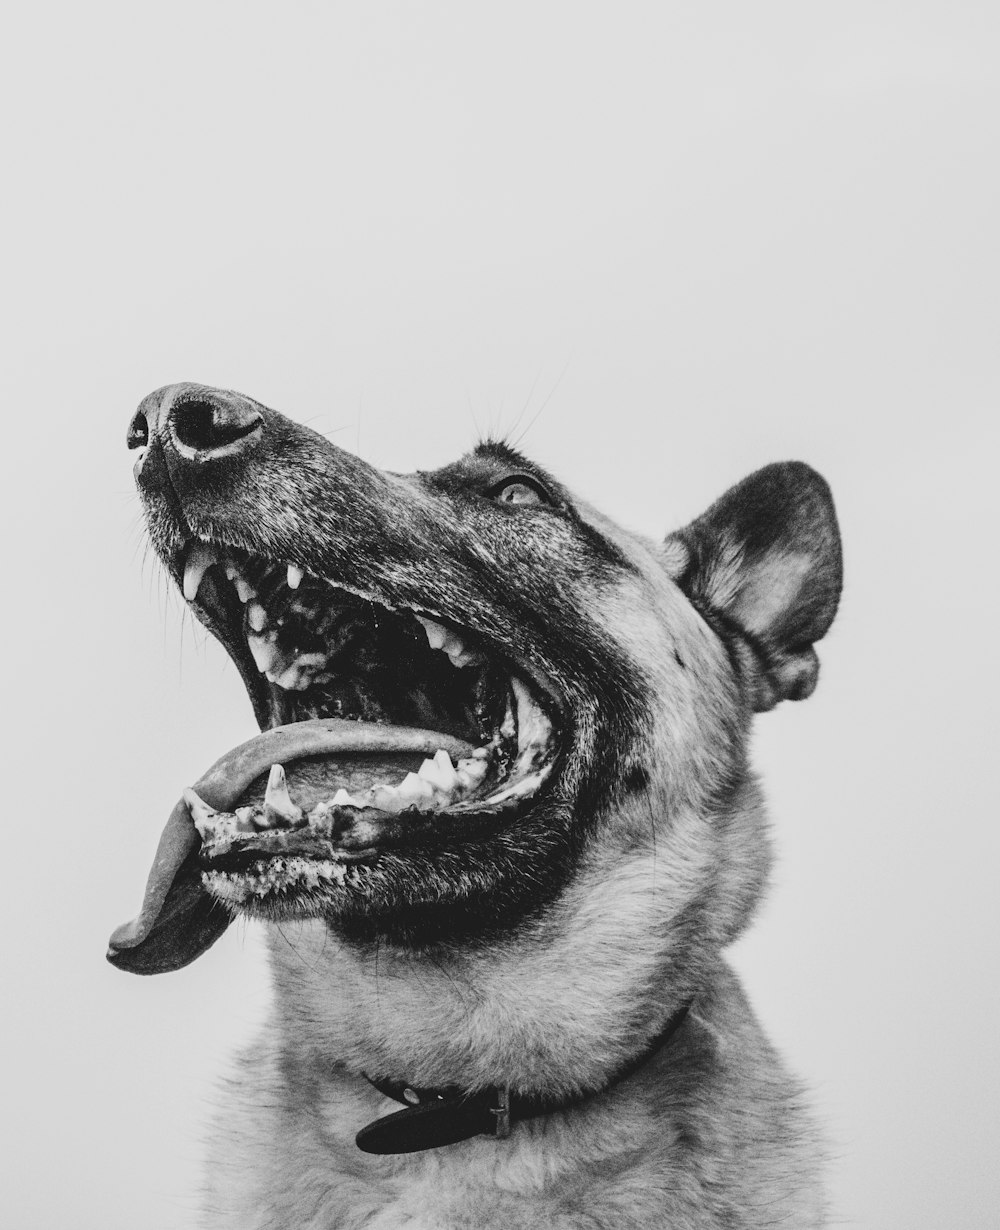 犬の開いた口のグレースケール写真